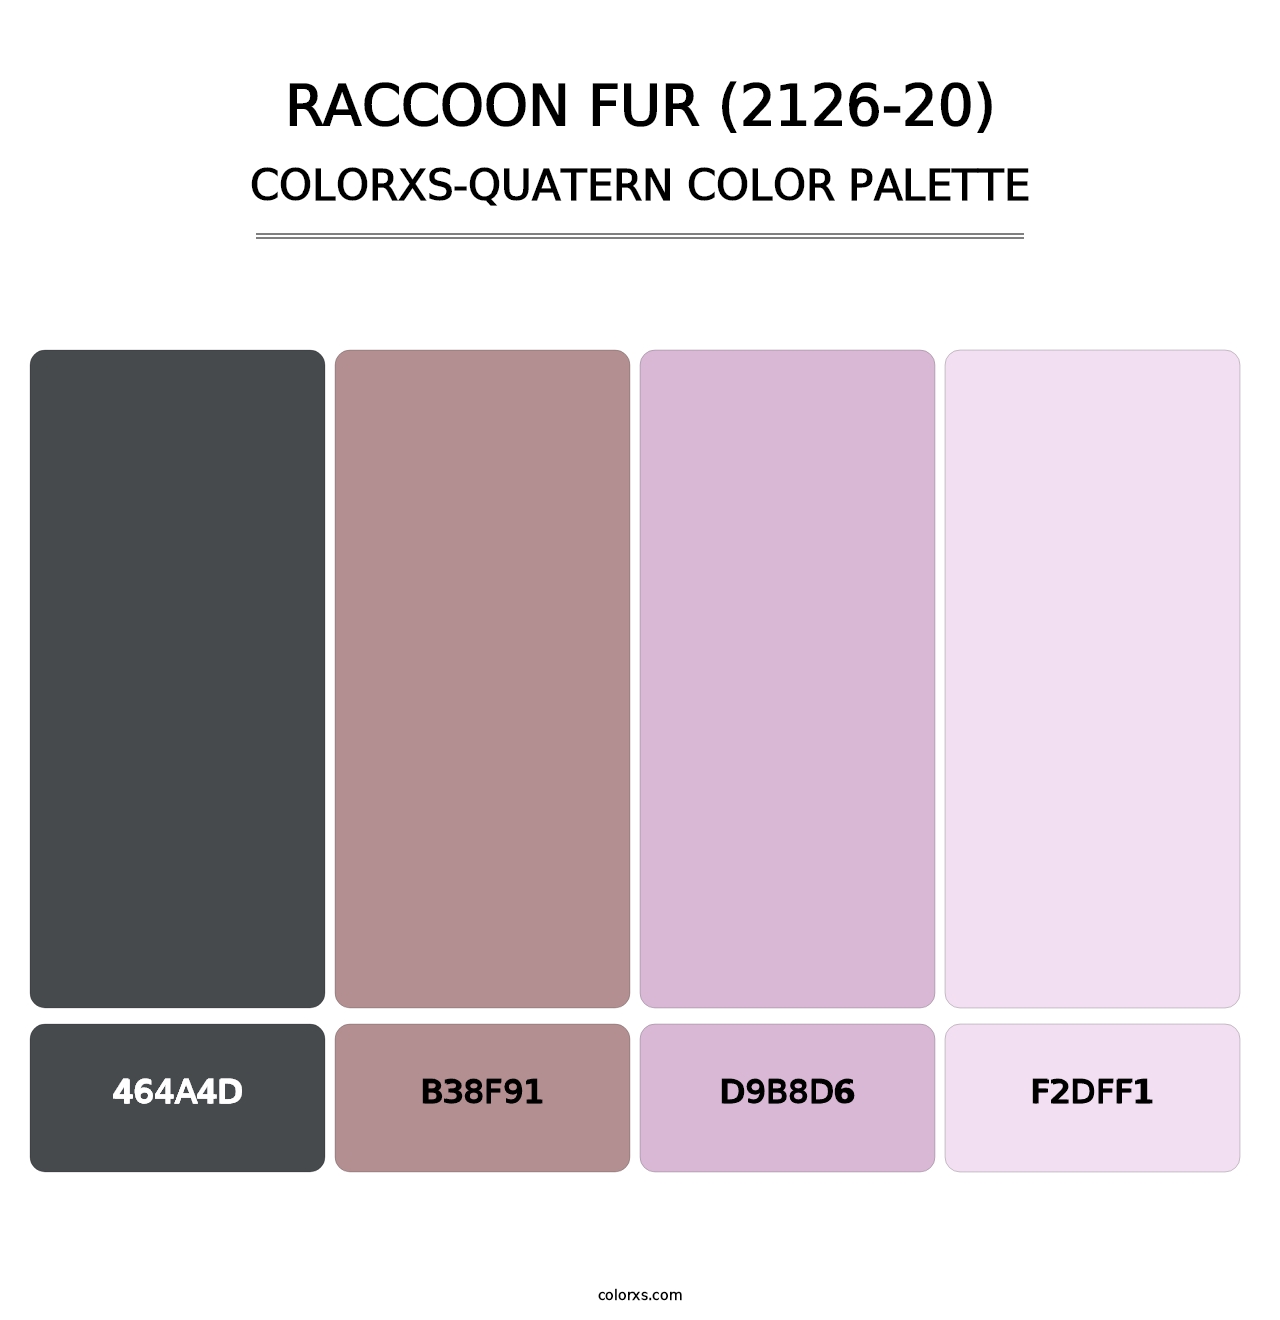 Raccoon Fur (2126-20) - Colorxs Quatern Palette